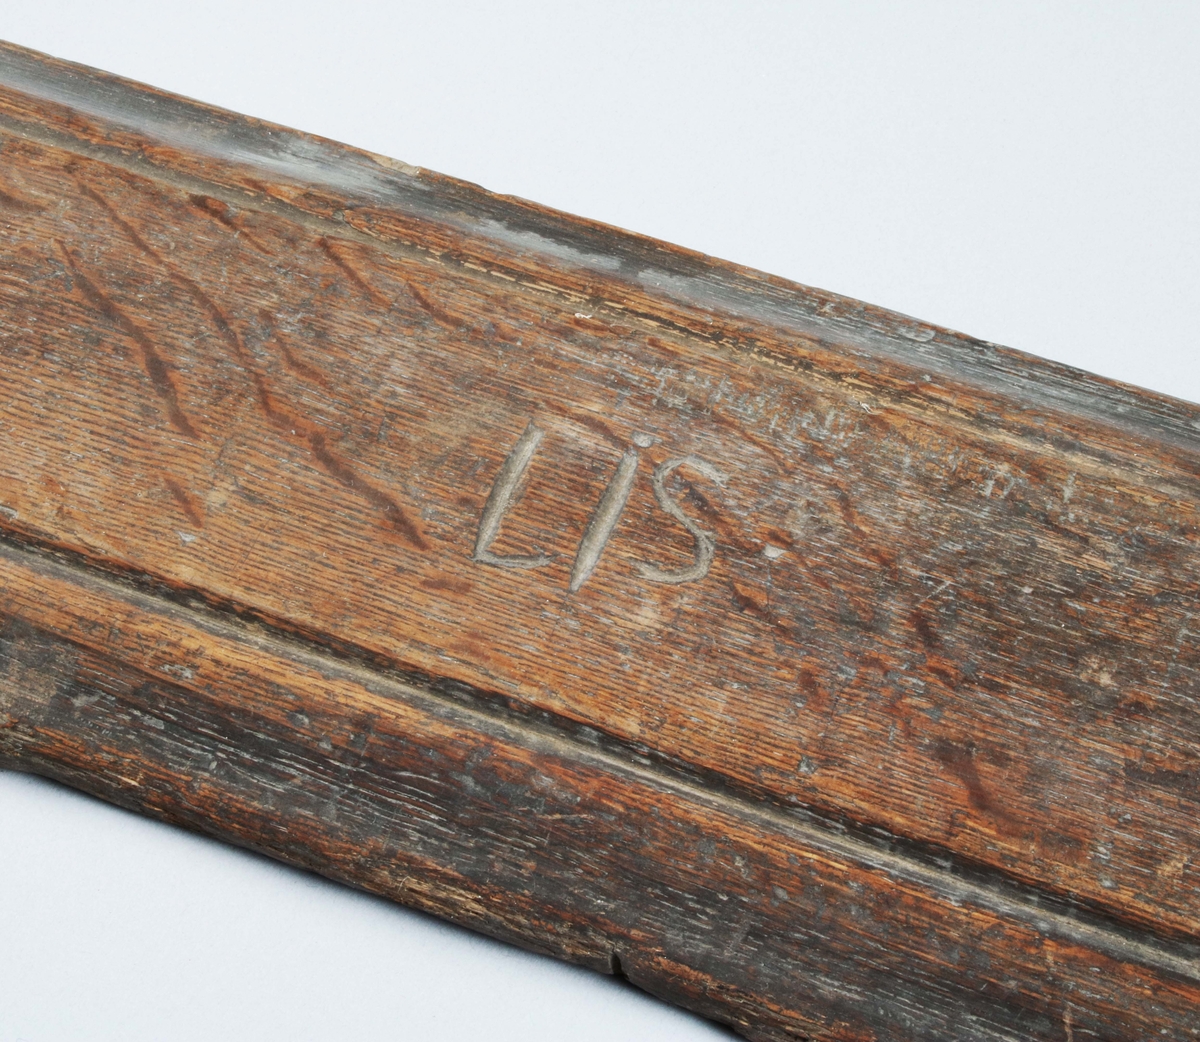 Kaveldon. (Mangelbräde och kavel). I brunbetsad ek. Infällt och träpluggat handtag med litet träbortfall. (Lätt maskstunget). Brädet med fasade och profilerade kanter, samt märkt "LIS" på ovansidan som är slät. Samhör med svarvad kavel, märkt: BM 8088.

Mangelbräde eller kavelbräde är ett redskap av trä som använts för mangling av textilier. Mangelbrädet användes tillsammans med en kavel, en slät rulle av trä. Den textil som skulle manglas, rullades upp på kaveln, på ett bord eller annat slätt underlag. Under hårt tryck, rullades kaveln med hjälp av mangelbrädet, fram och tillbaka över bordet. (Wikipedia)